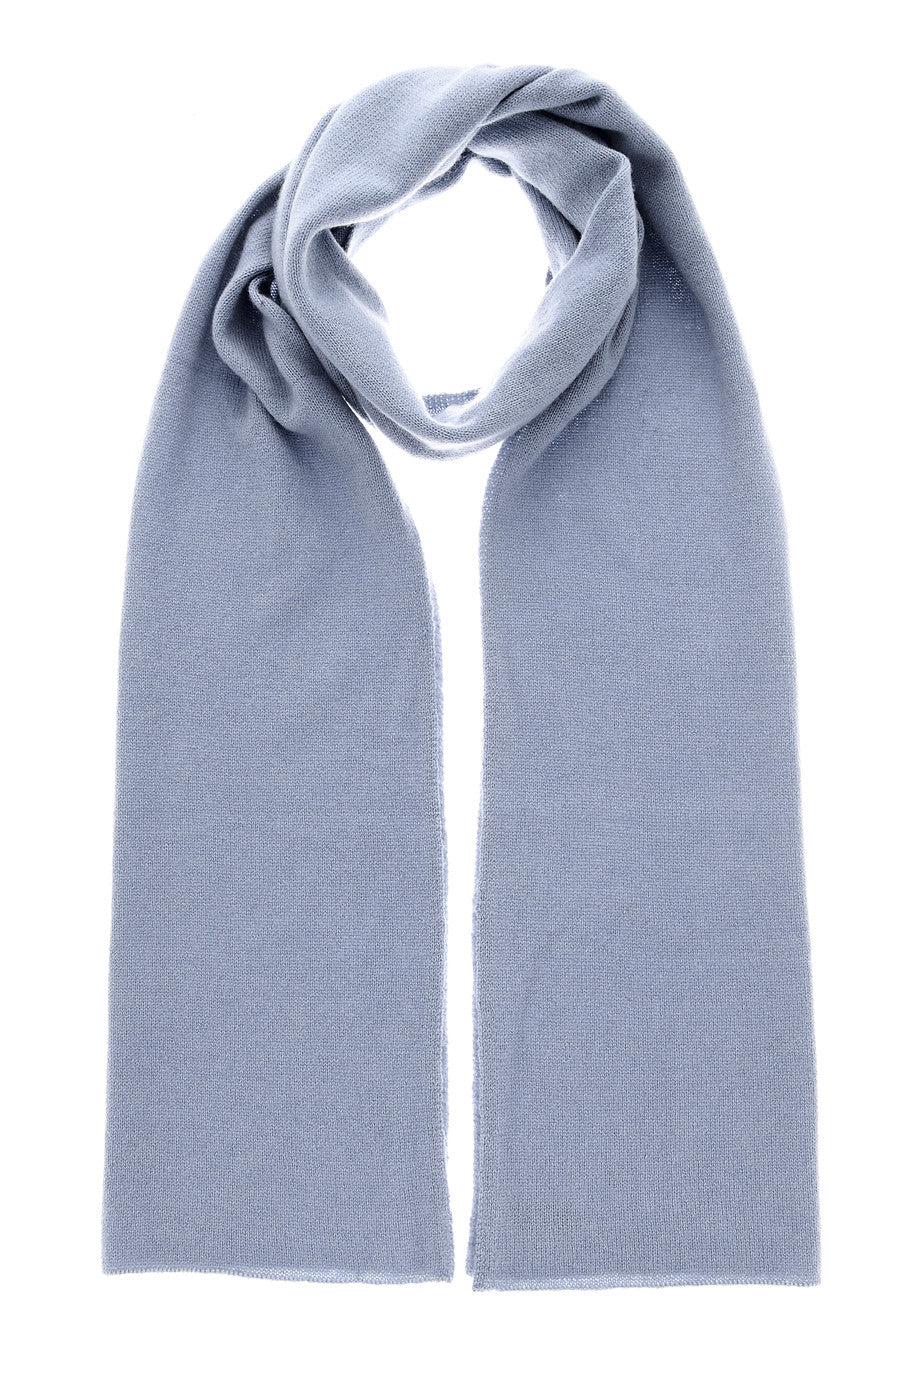 NEPAL grijs blauwe kasjmier sjaal